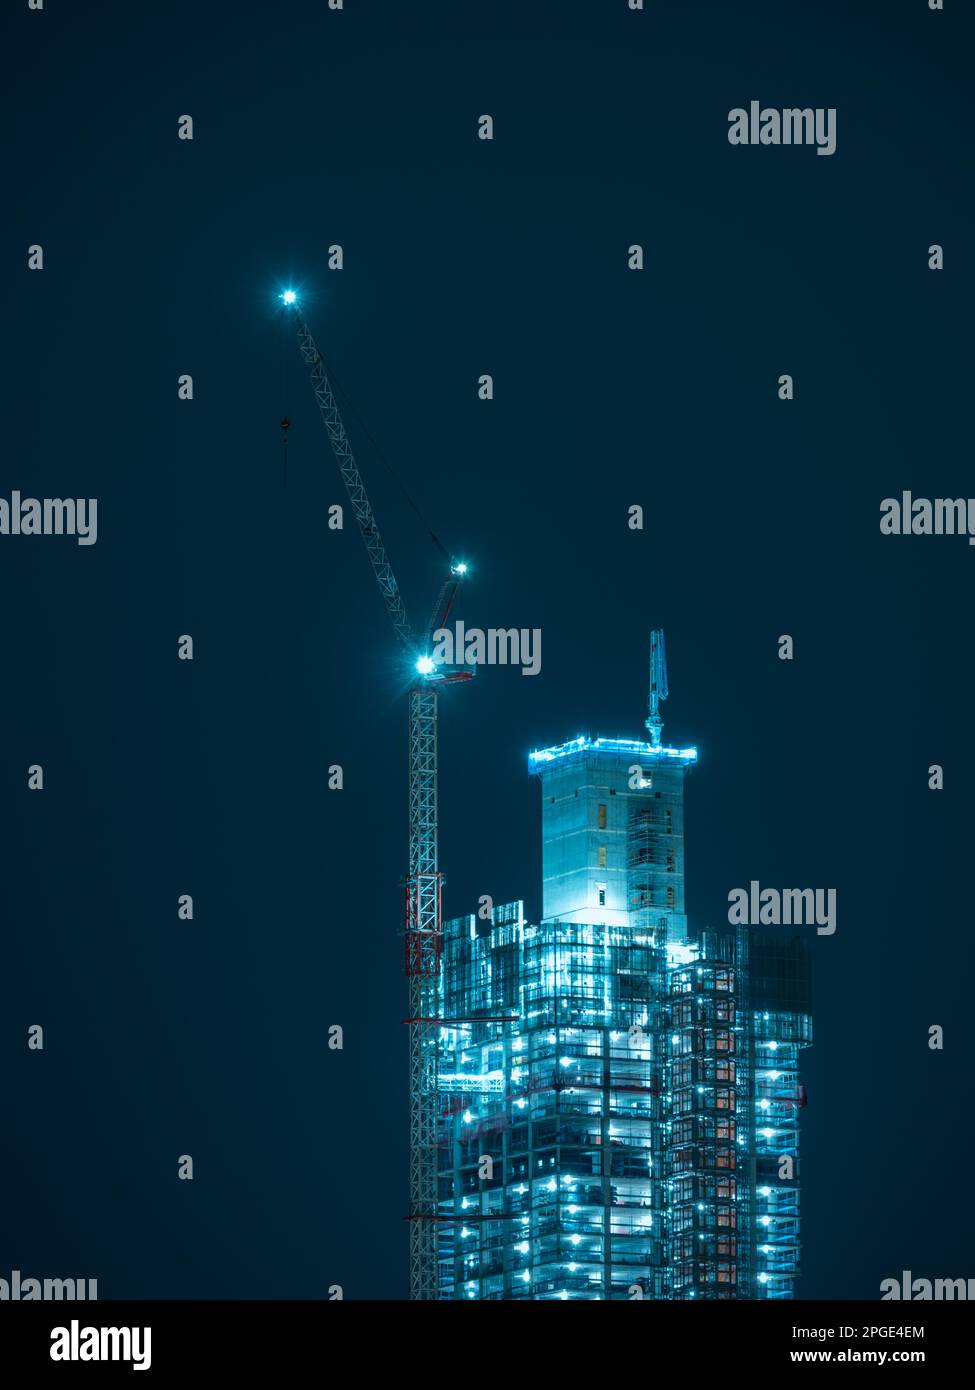 Un grattacielo torreggiante a Goteborg, Svezia, rimane incompiuto e non pronto per le persone; un lavoro in corso di architettura e costruzione. Foto Stock